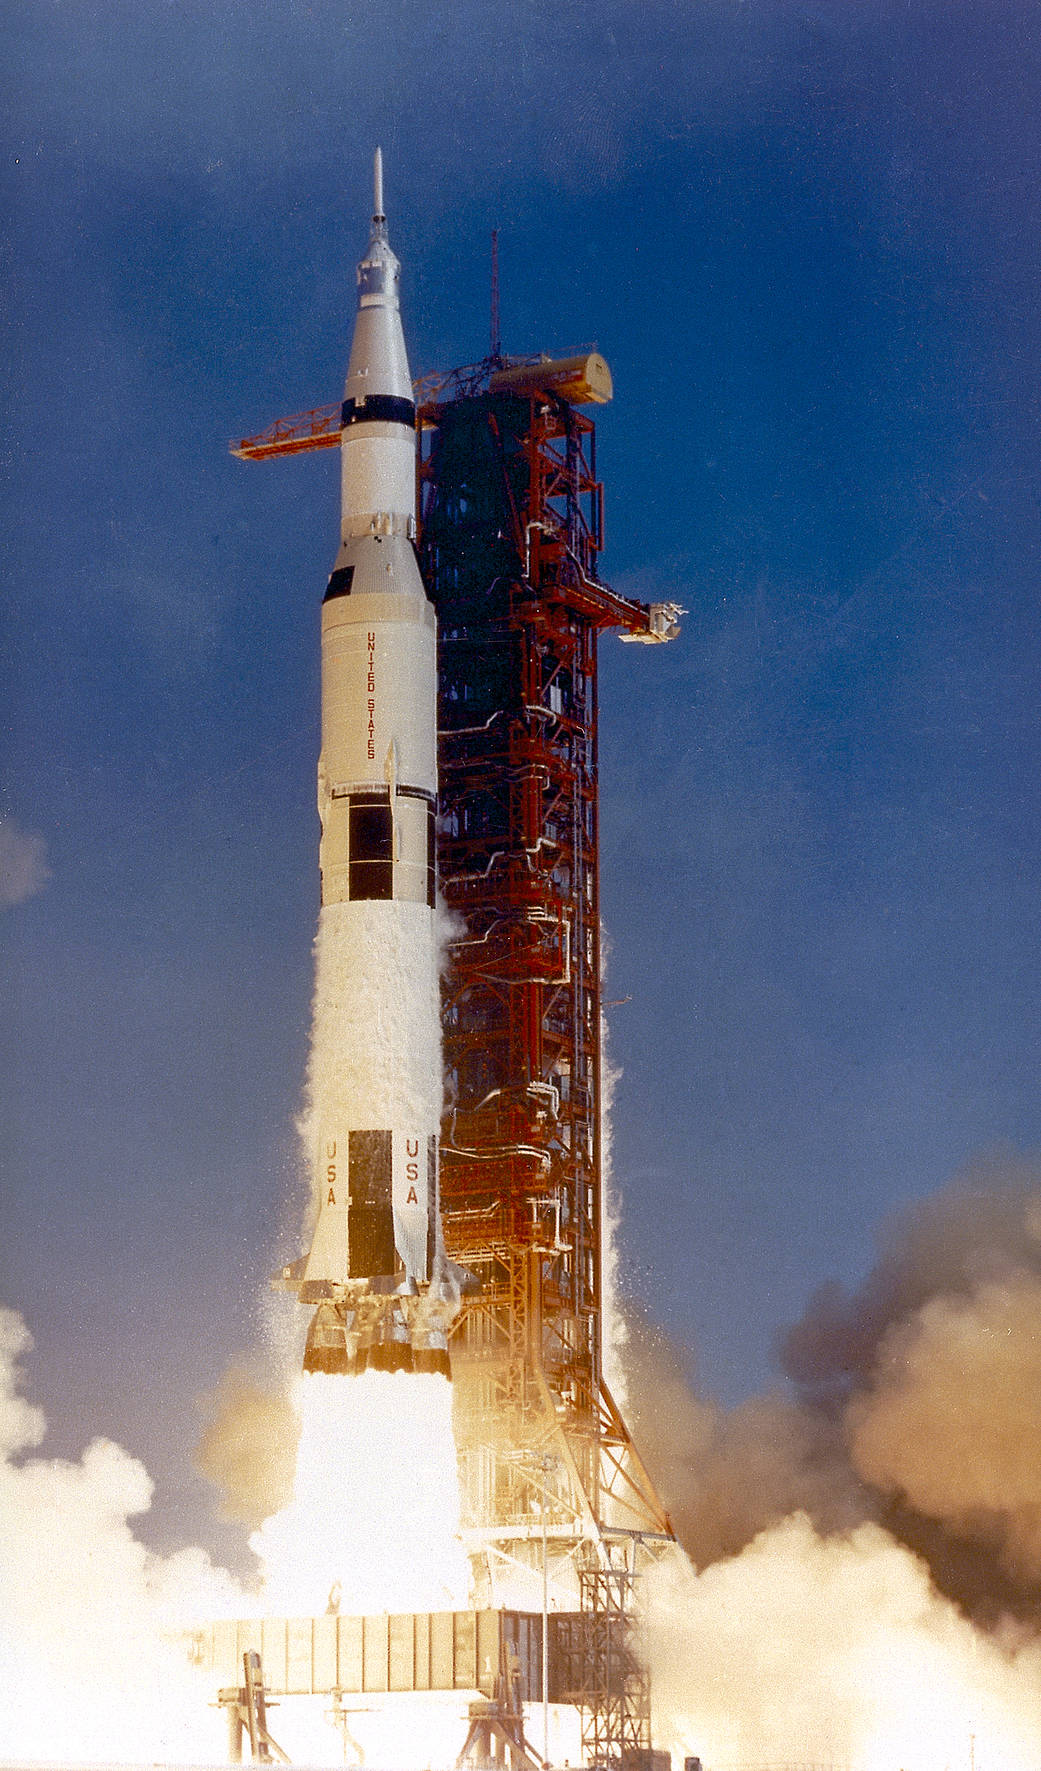 Fotografija rakete Saturn V (SA-506) koja je lansirana u 13.32 sati po lokalnom vremenu, na današnji dan prije 50 godina, 16. srpnja 1969. godine. 